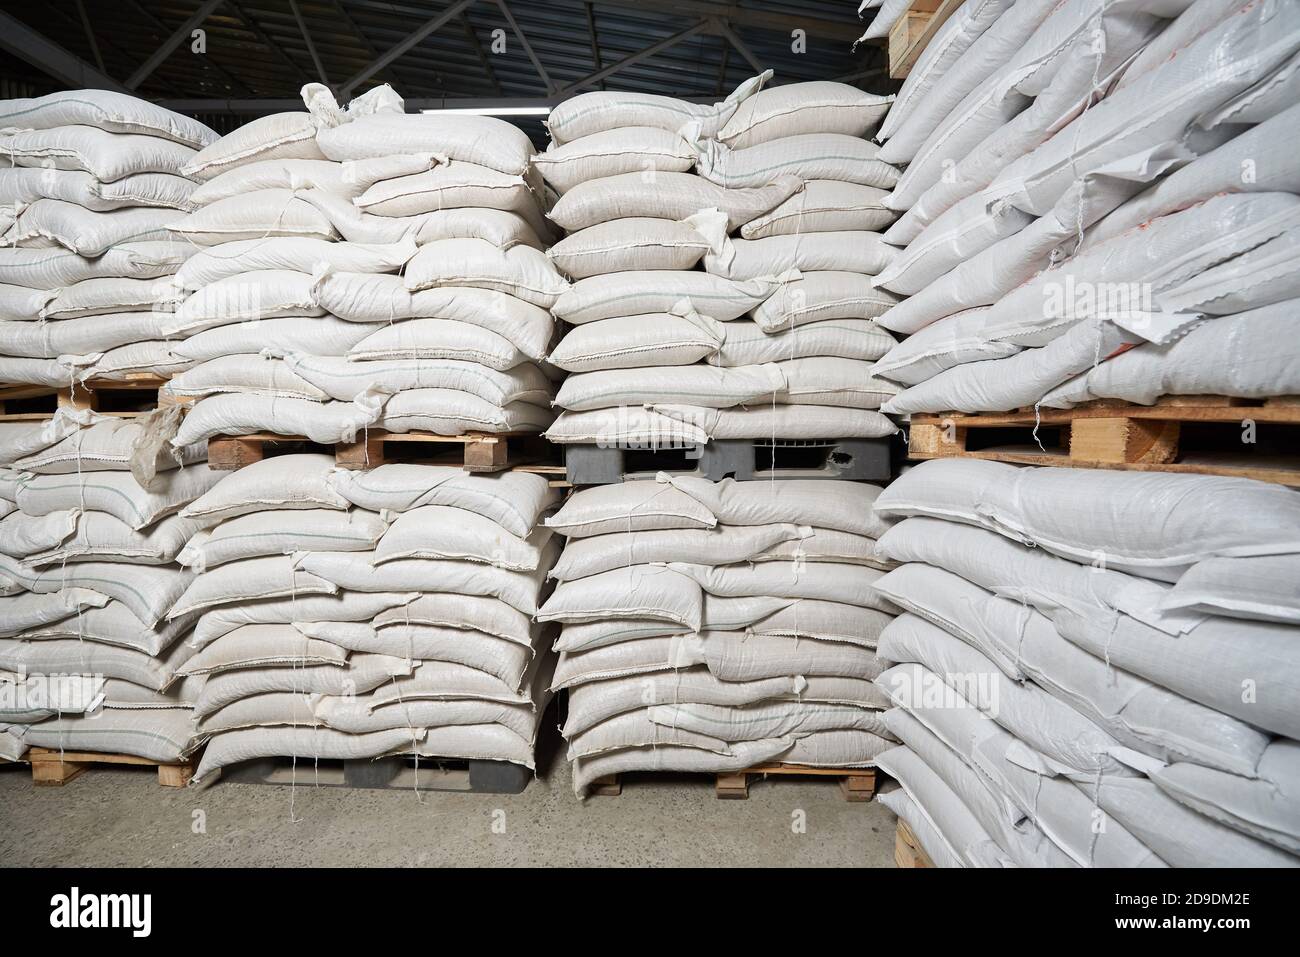 Beaucoup de sacs pleins blancs avec des céréales se trouvent sur des palettes dans un entrepôt Banque D'Images